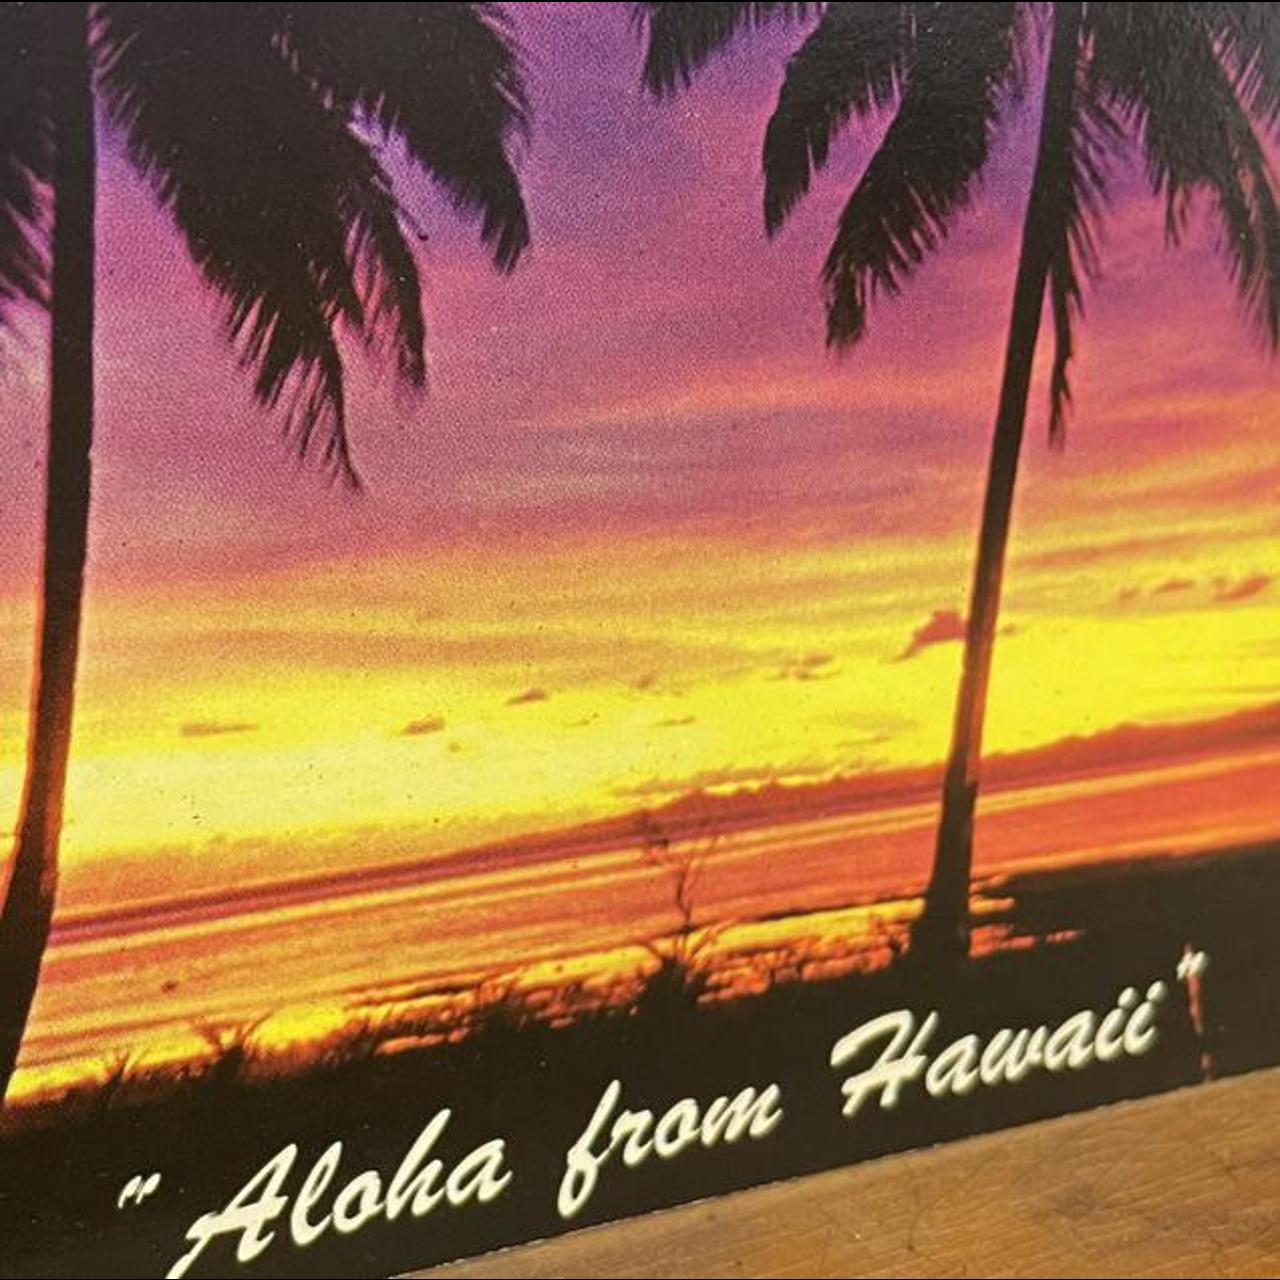 Product Image 2 - Vintage Tropical Sunset postcard, ~1970s
“Aloha